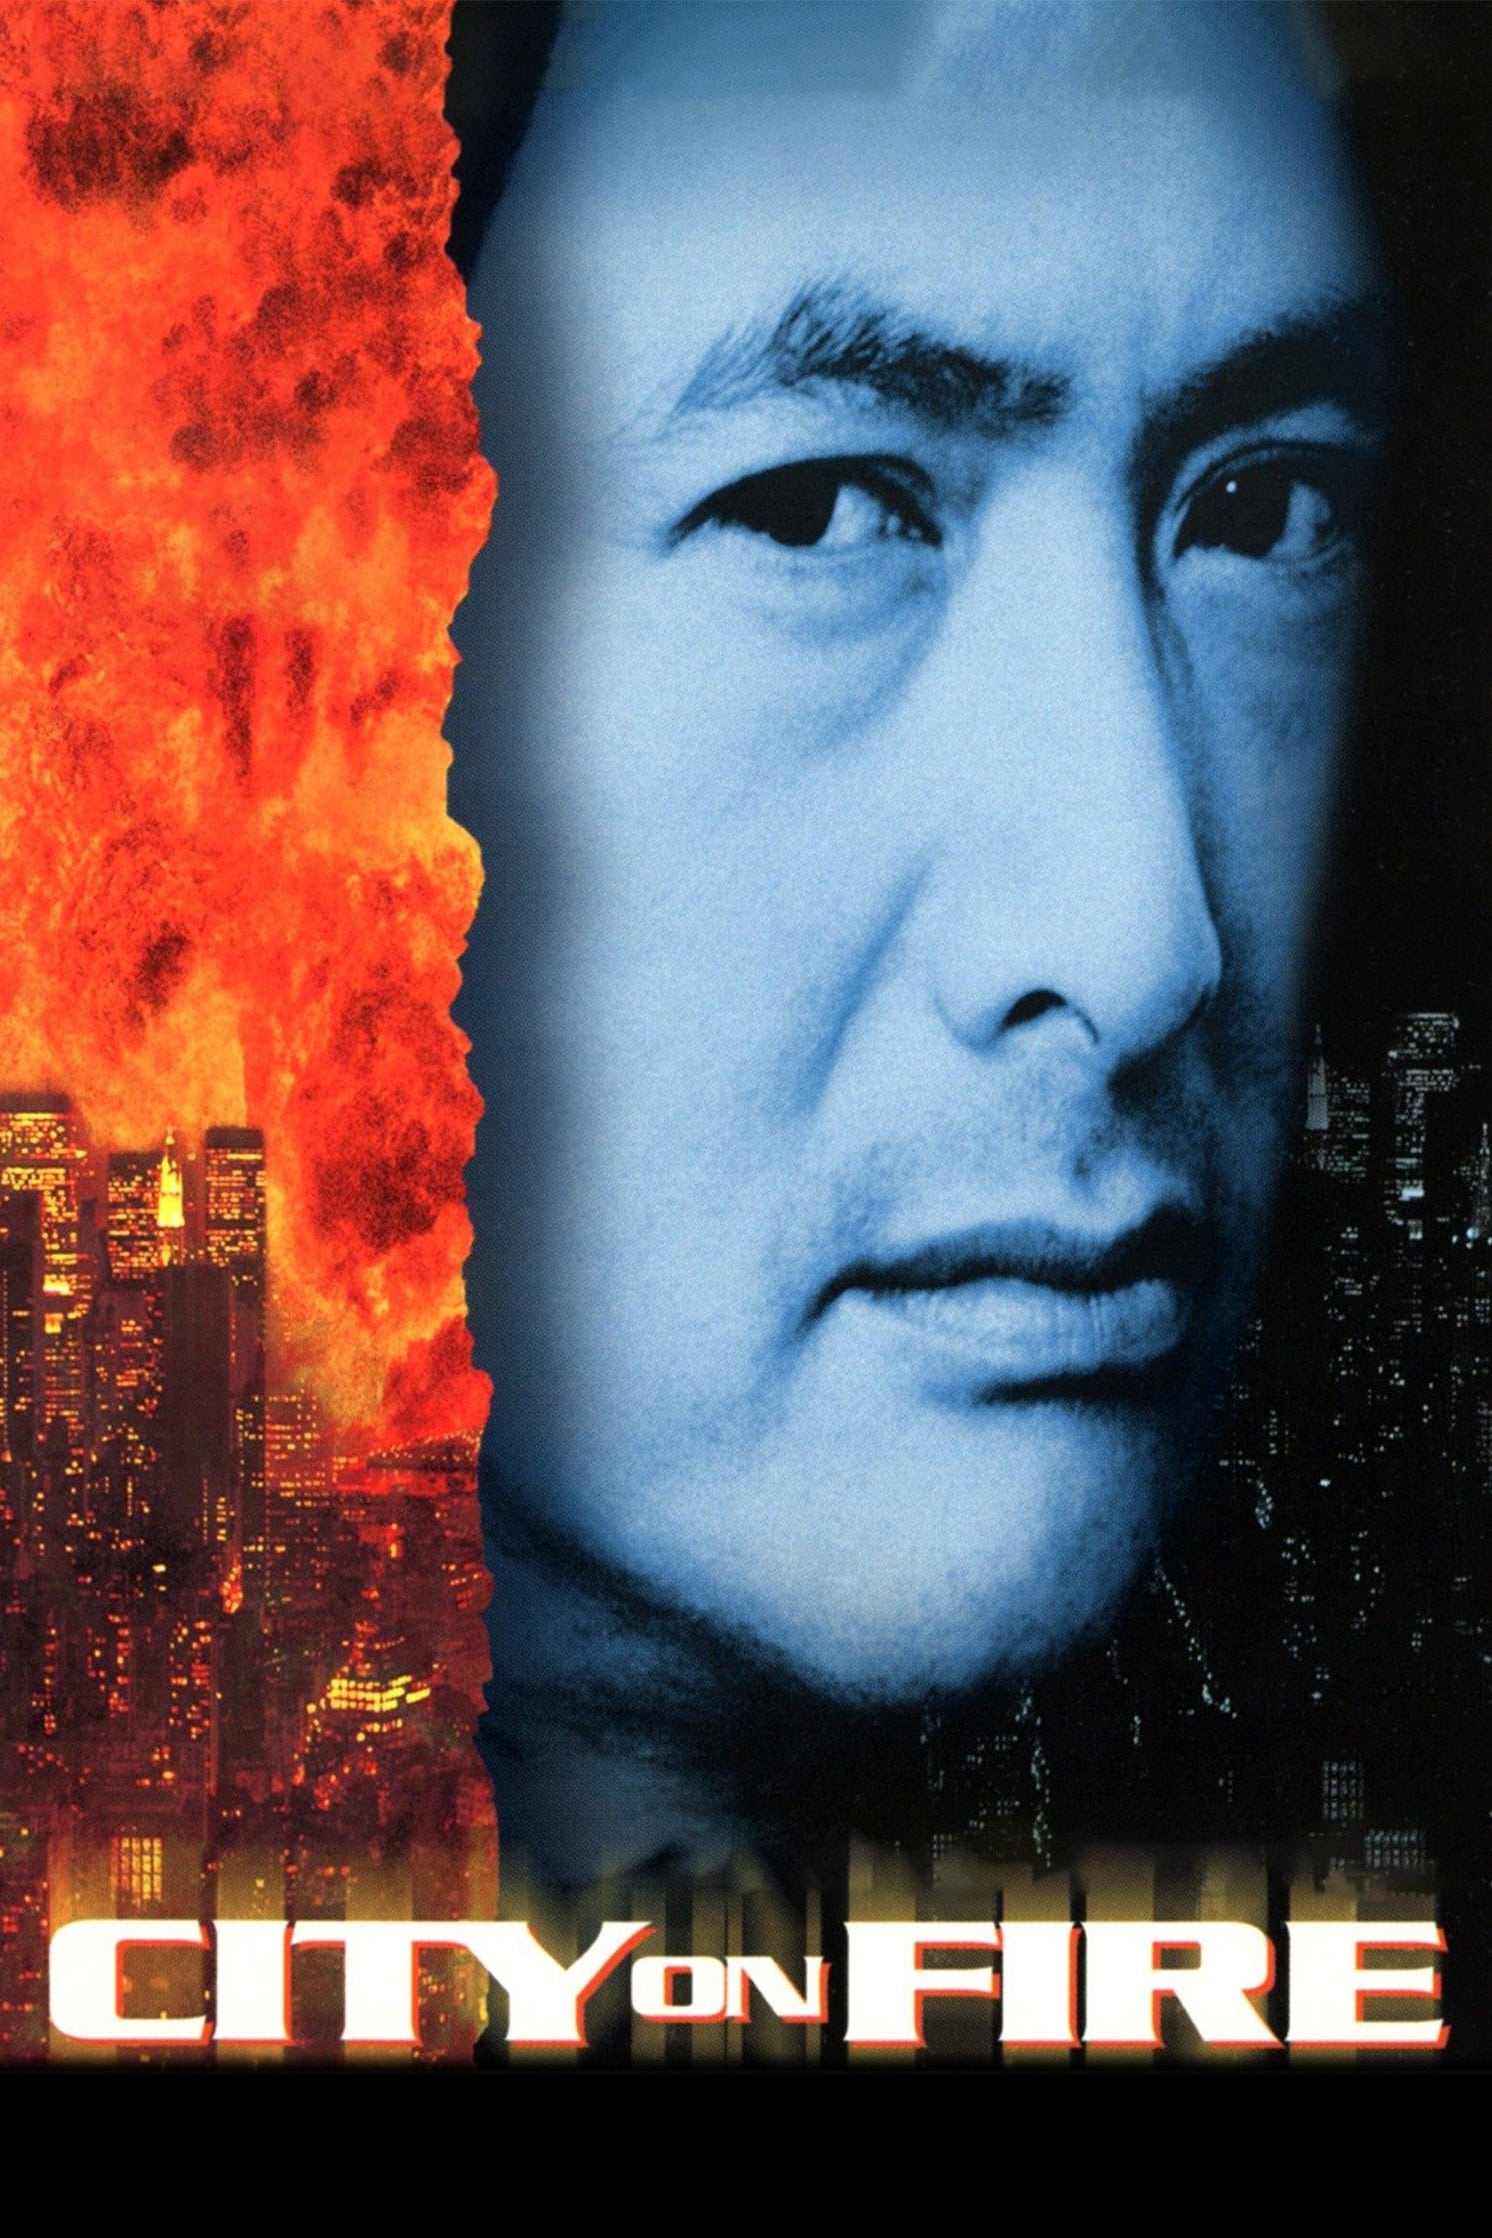 Long Hổ Phong Vân - City On Fire (1987)